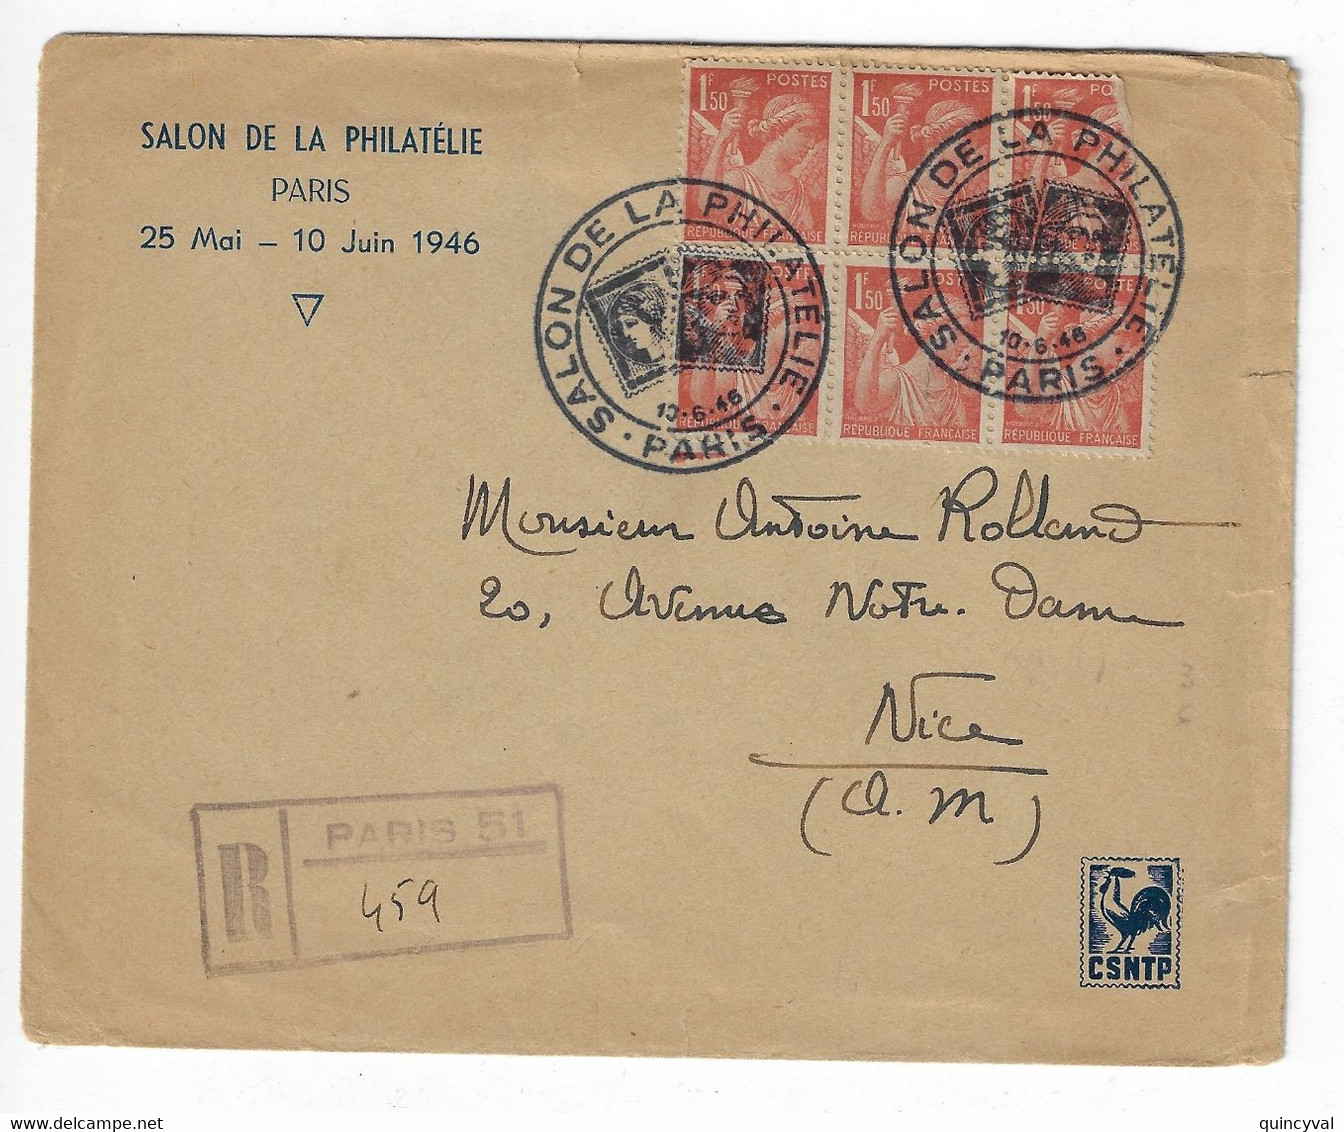 PARIS SALON DE LA PHILATELIE CSNTP 1946 Lettre Recommandée Grille Pas Etiquette Bureau Temporaire 1,50 F Iris Yv 652 - Commemorative Postmarks